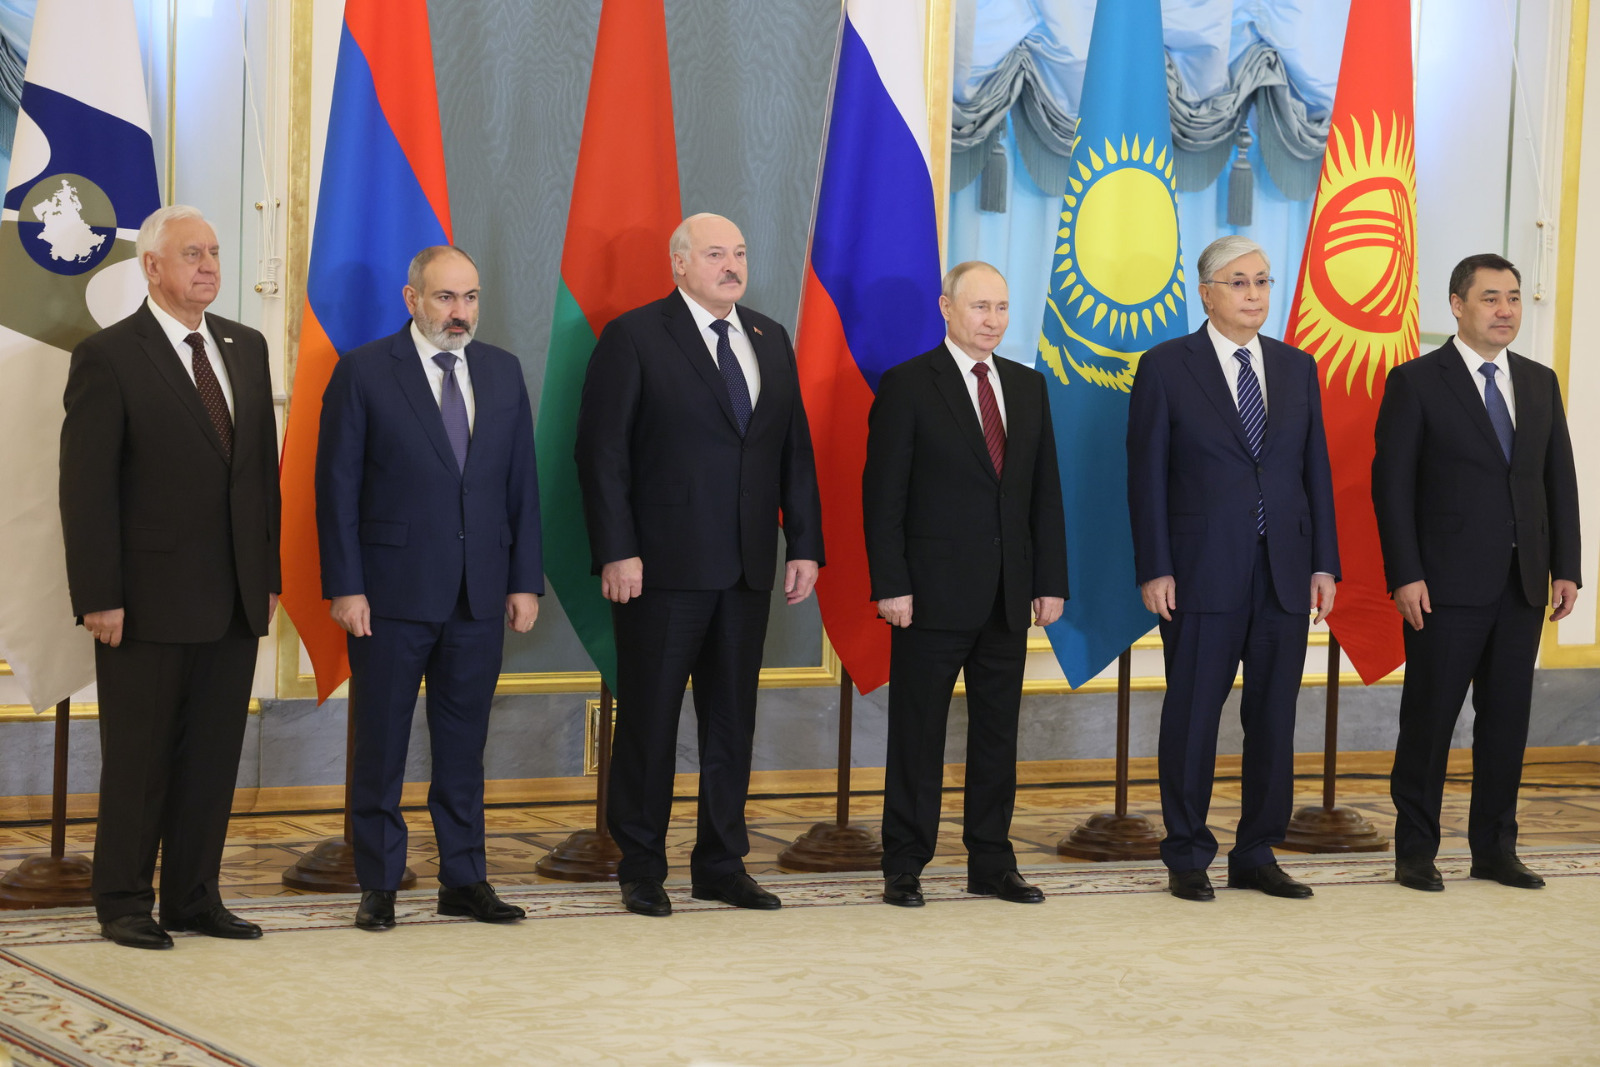 Isu apa yang akan diangkat pada pertemuan puncak oleh para pemimpin negara Uni Ekonomi Eurasia?